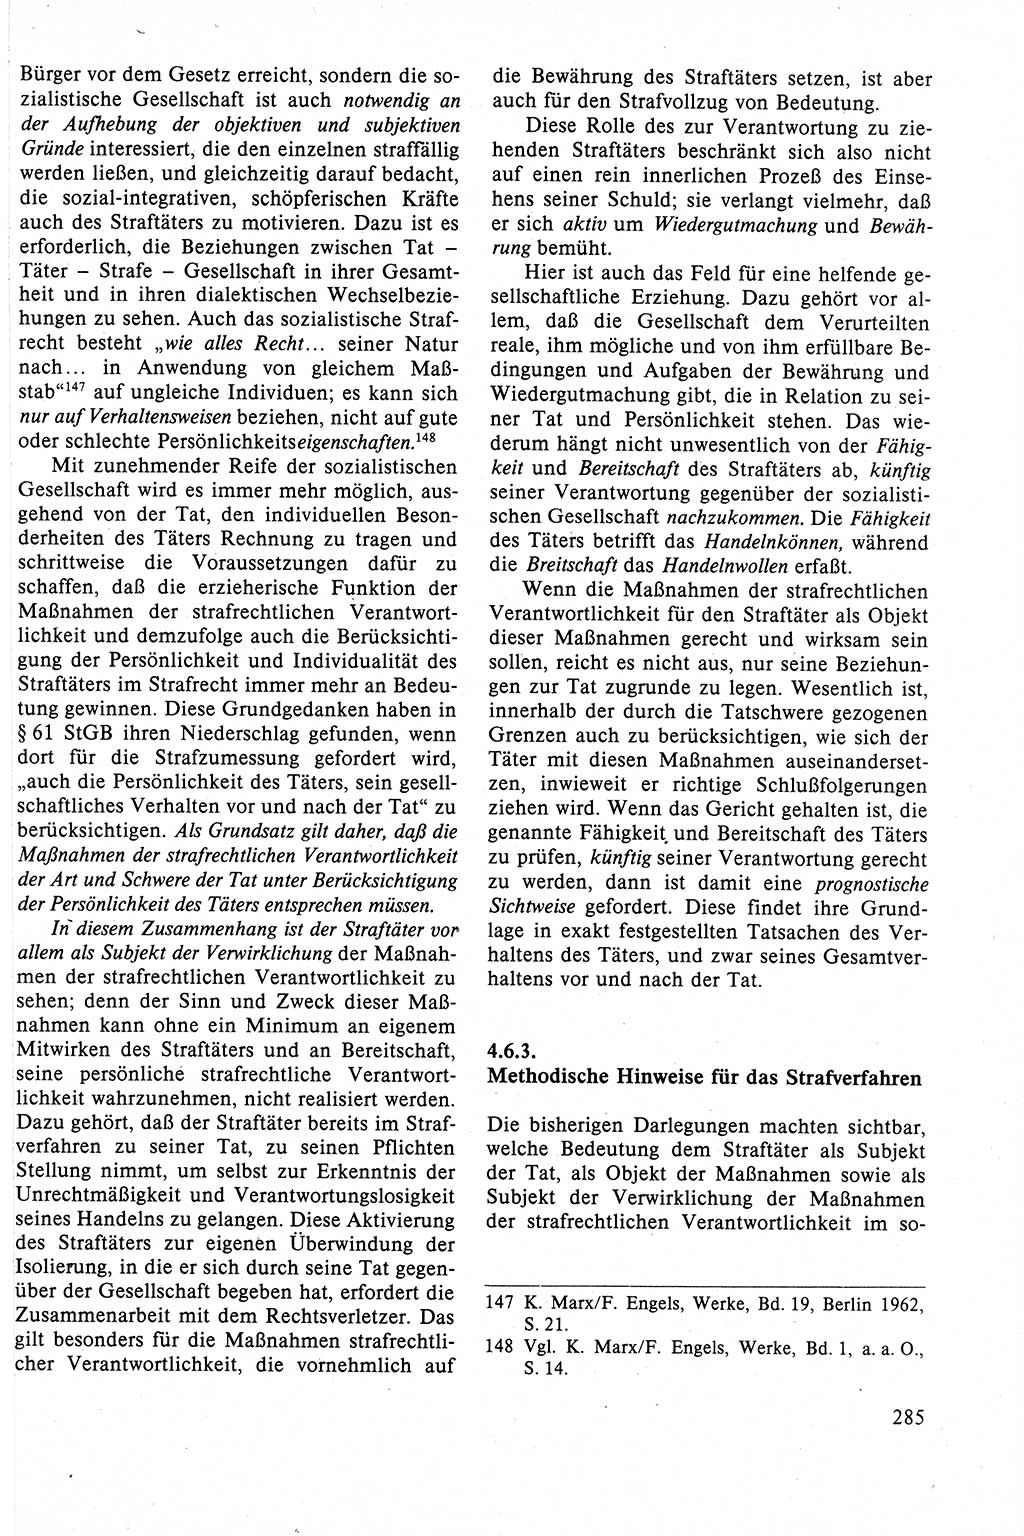 Strafrecht der DDR (Deutsche Demokratische Republik), Lehrbuch 1988, Seite 285 (Strafr. DDR Lb. 1988, S. 285)